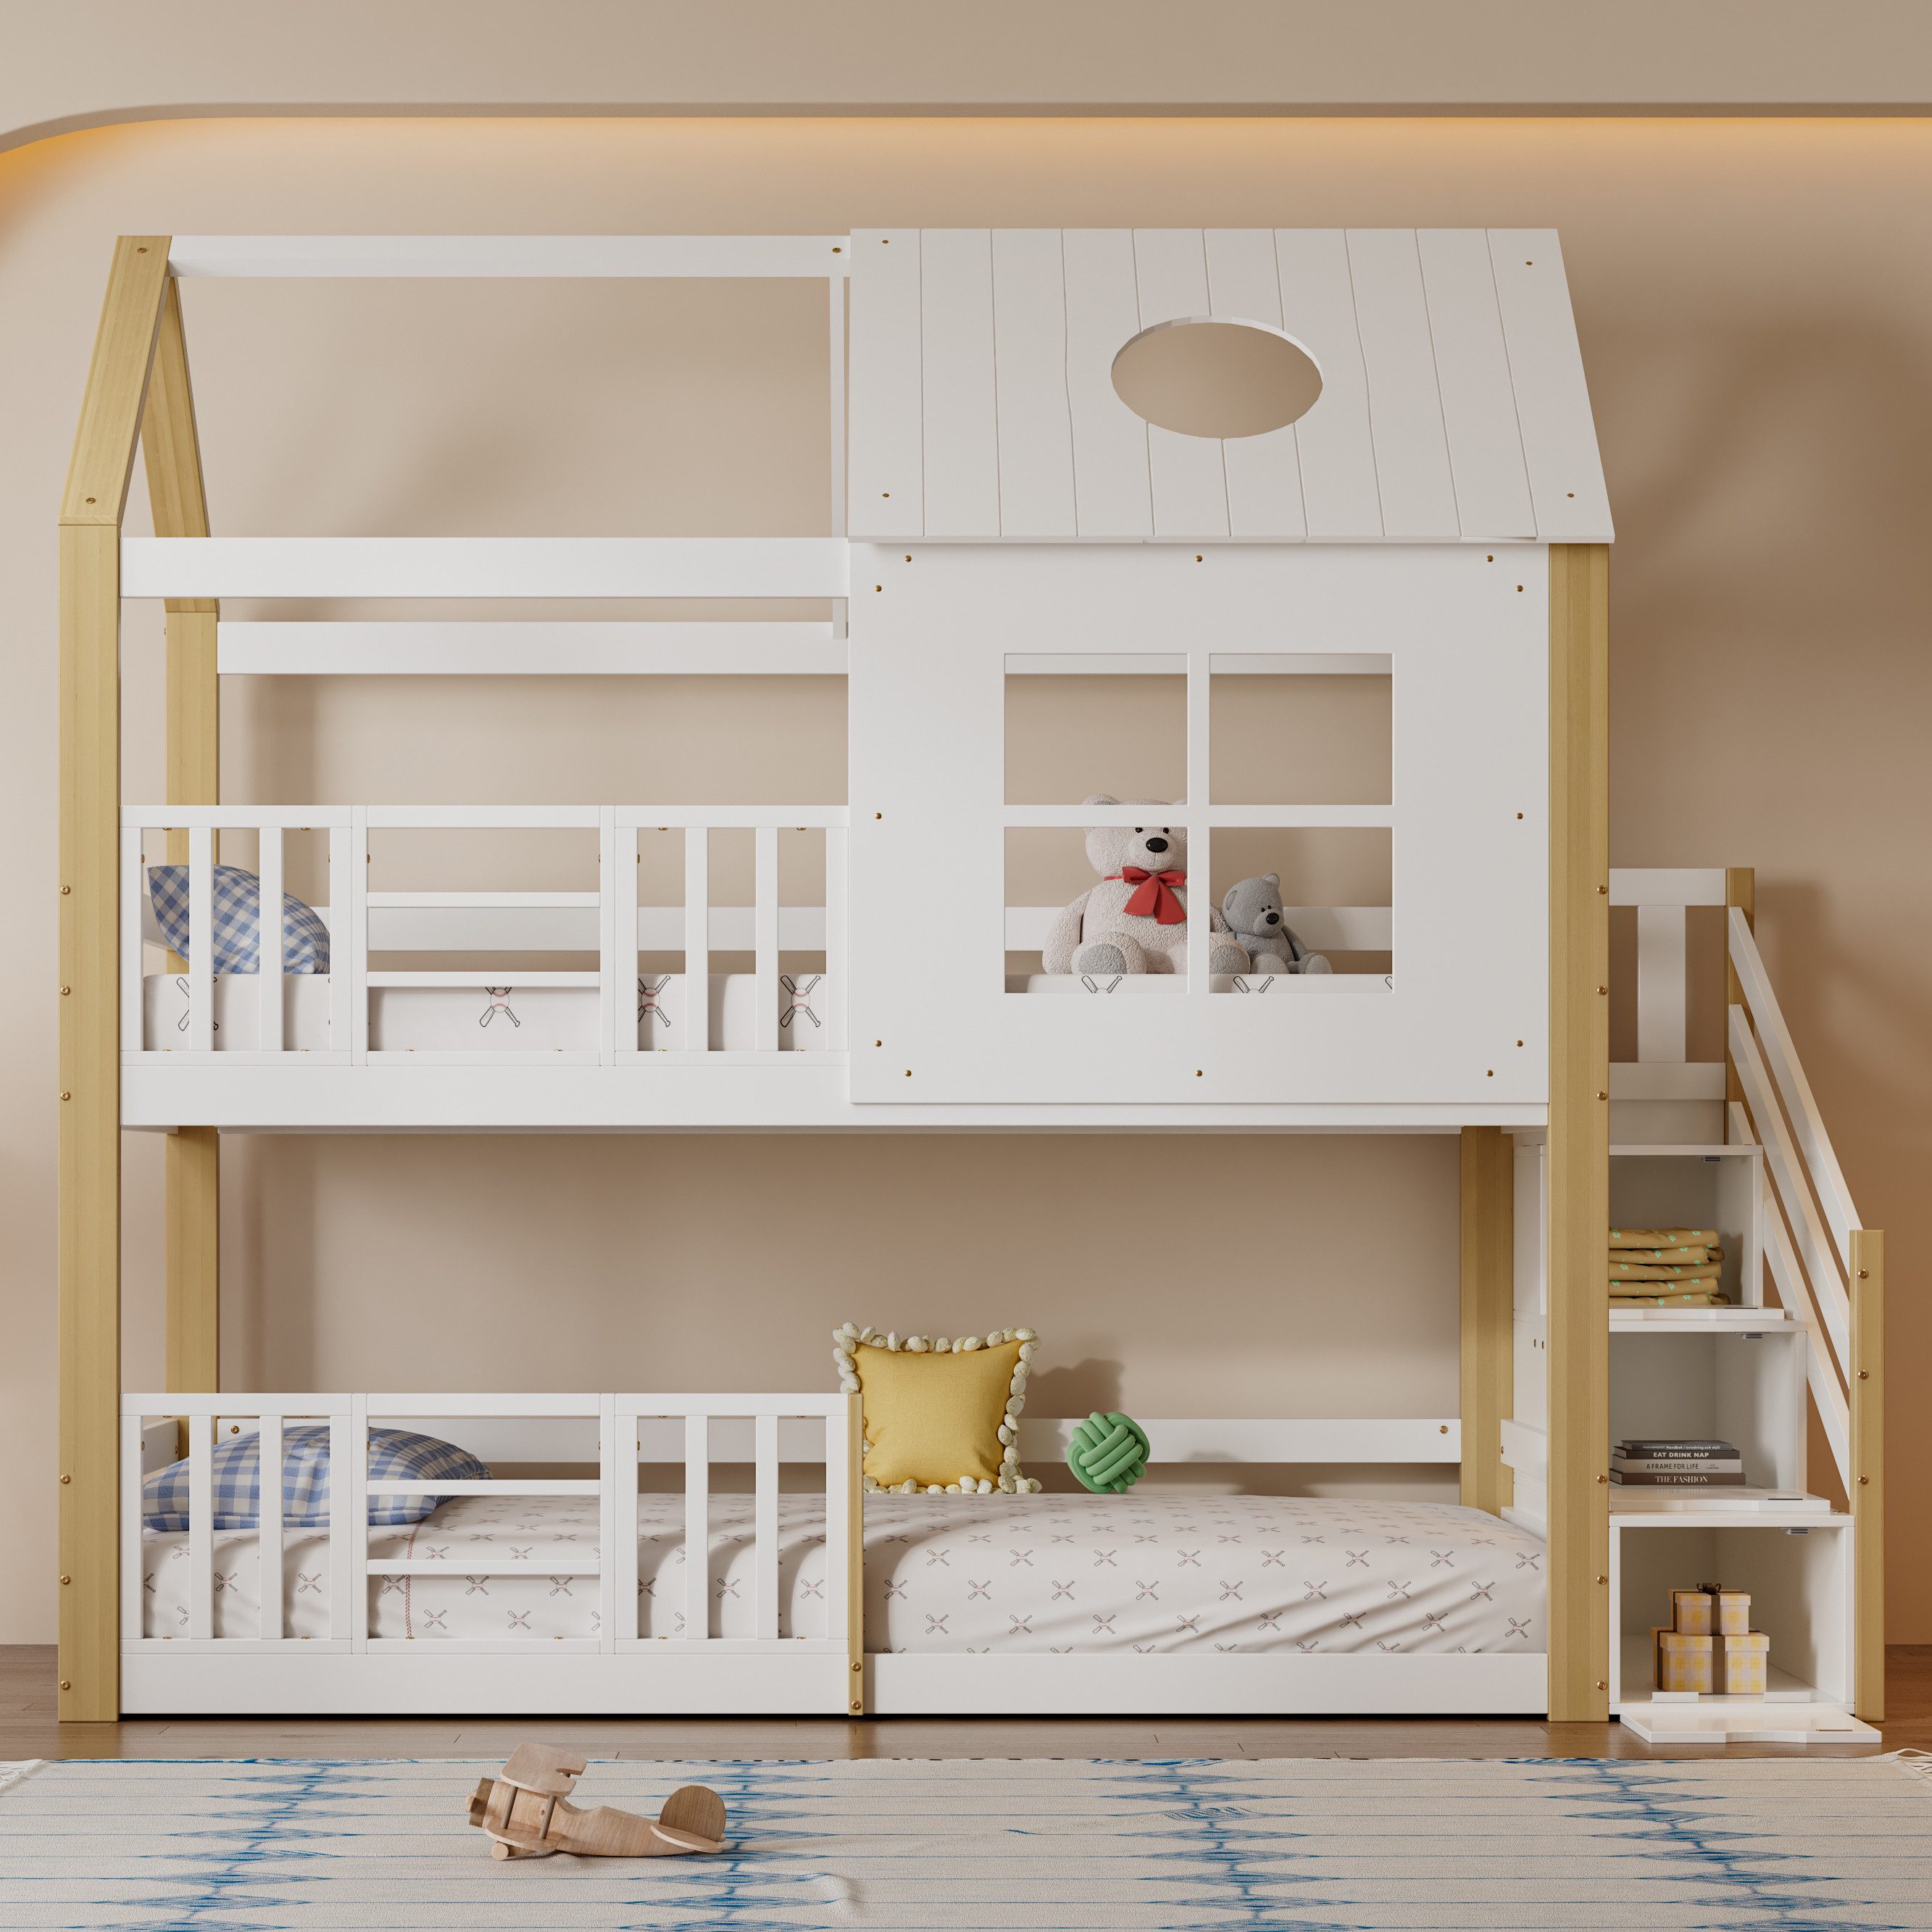 REDOM Etagenbett Kinderbett mit Fenster und Dach (mit Aufbewahrungstreppe, Hausbett, Kinderbett, mit Fallschutzgitter), ohne Matratze